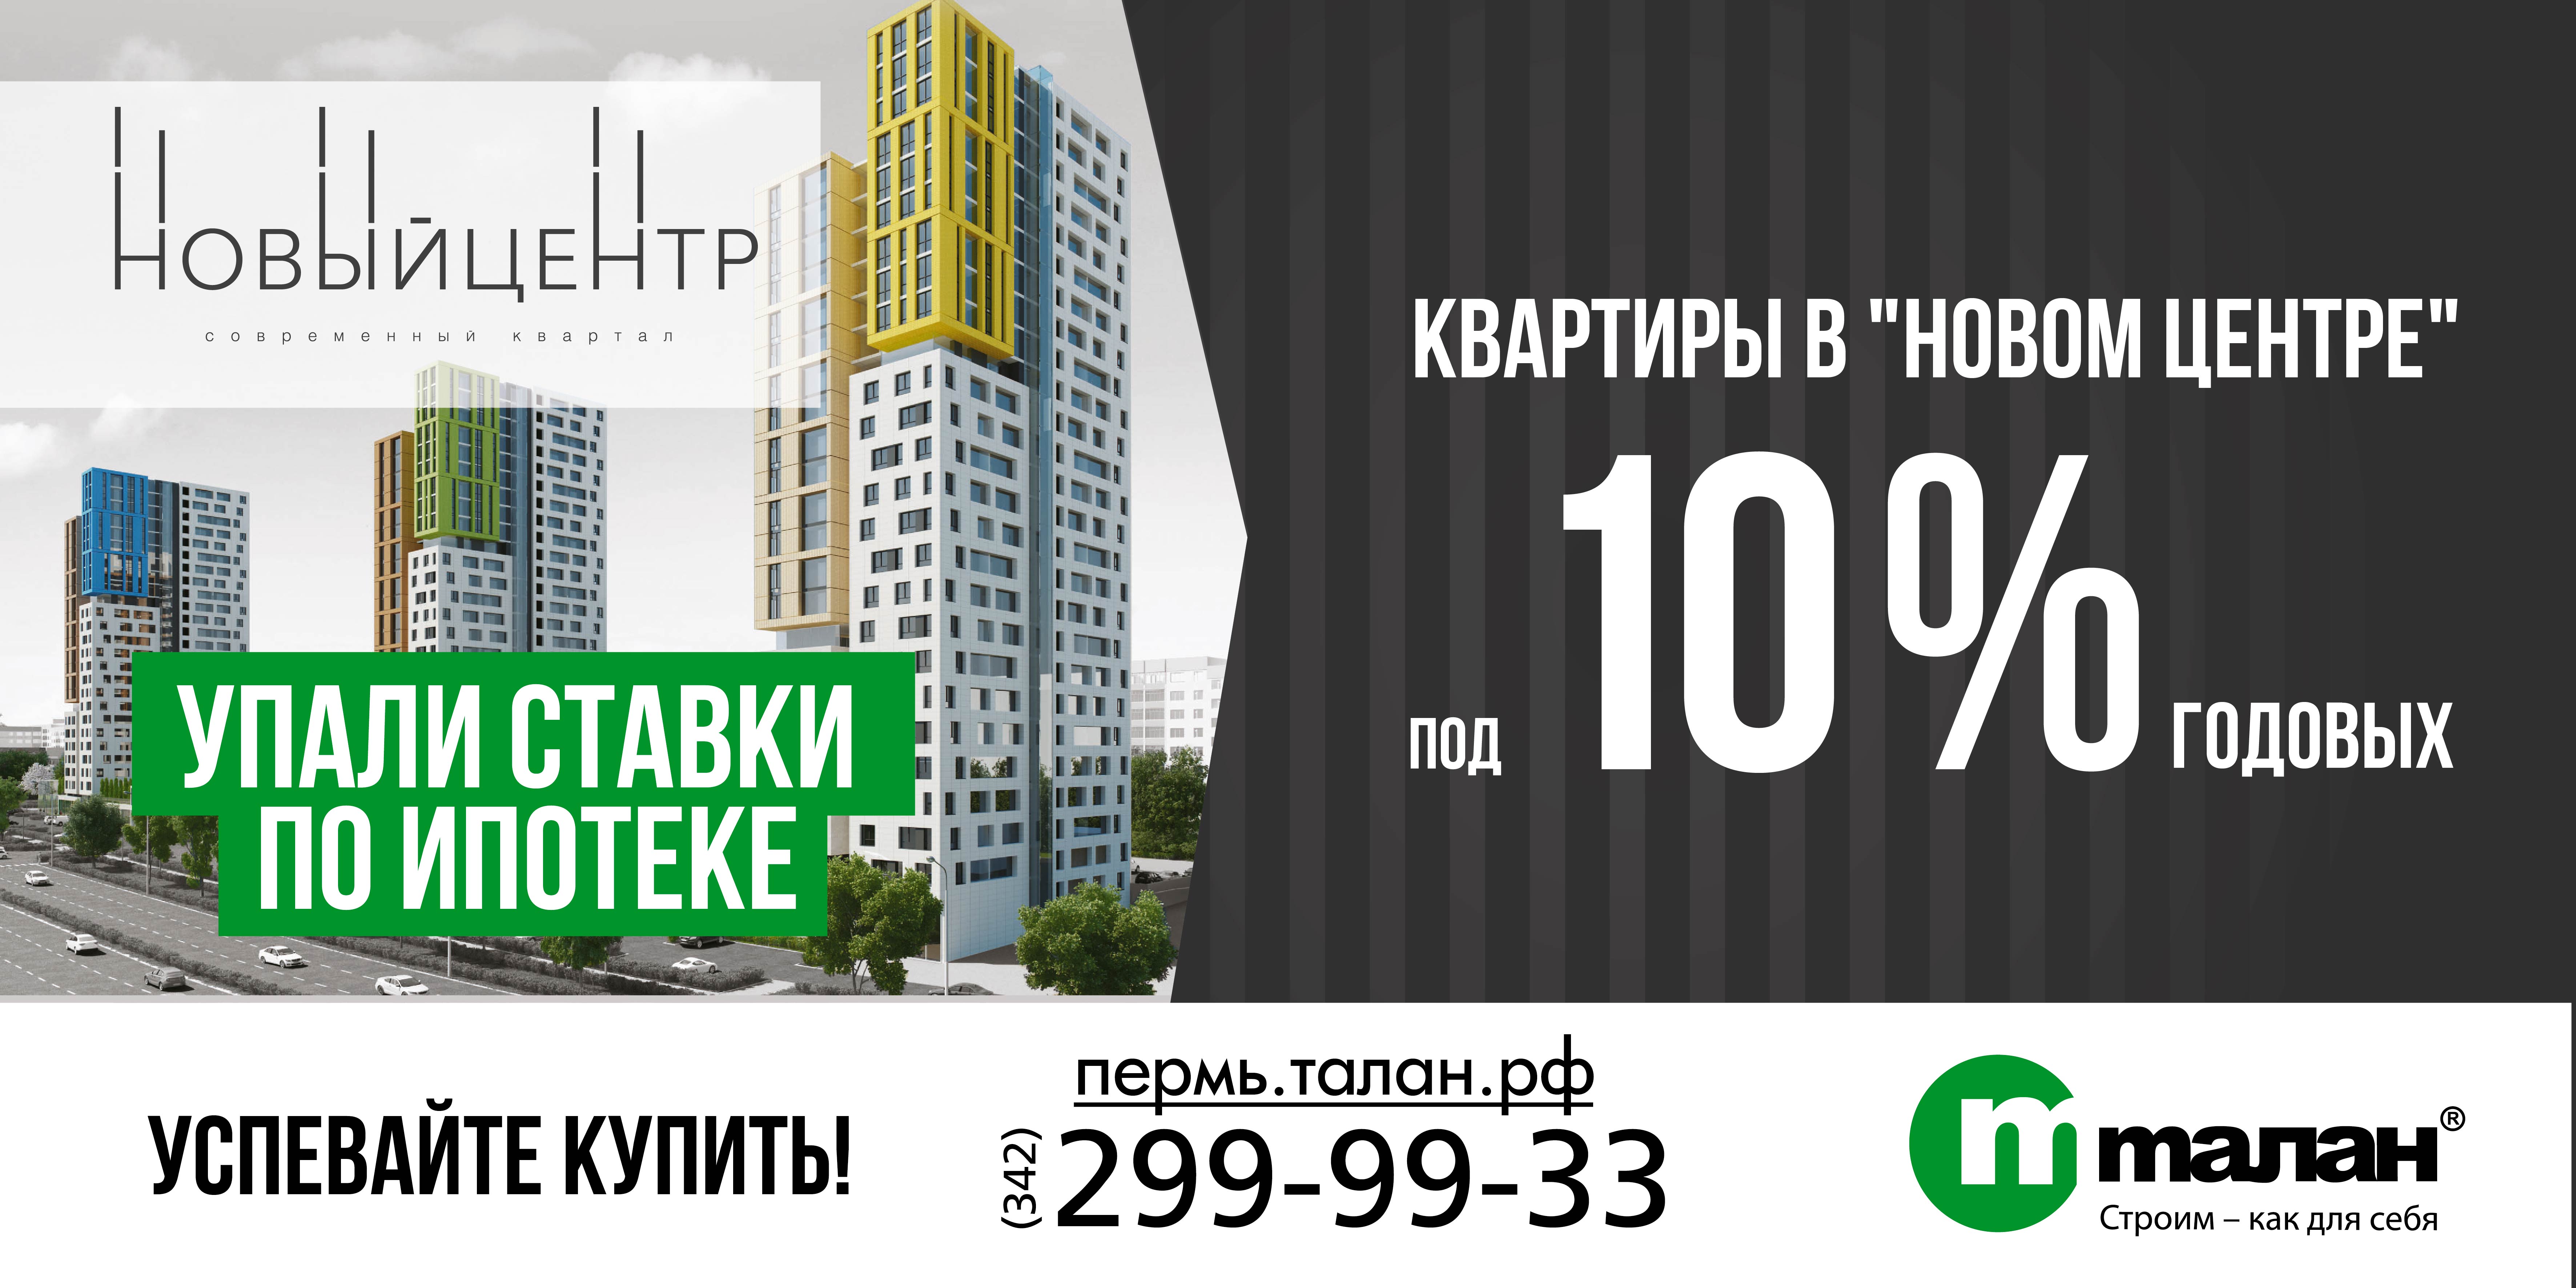 Компания «Талан» и банк ВТБ24 запустили акцию по ипотеке для клиентов современного квартала «Новый центр»